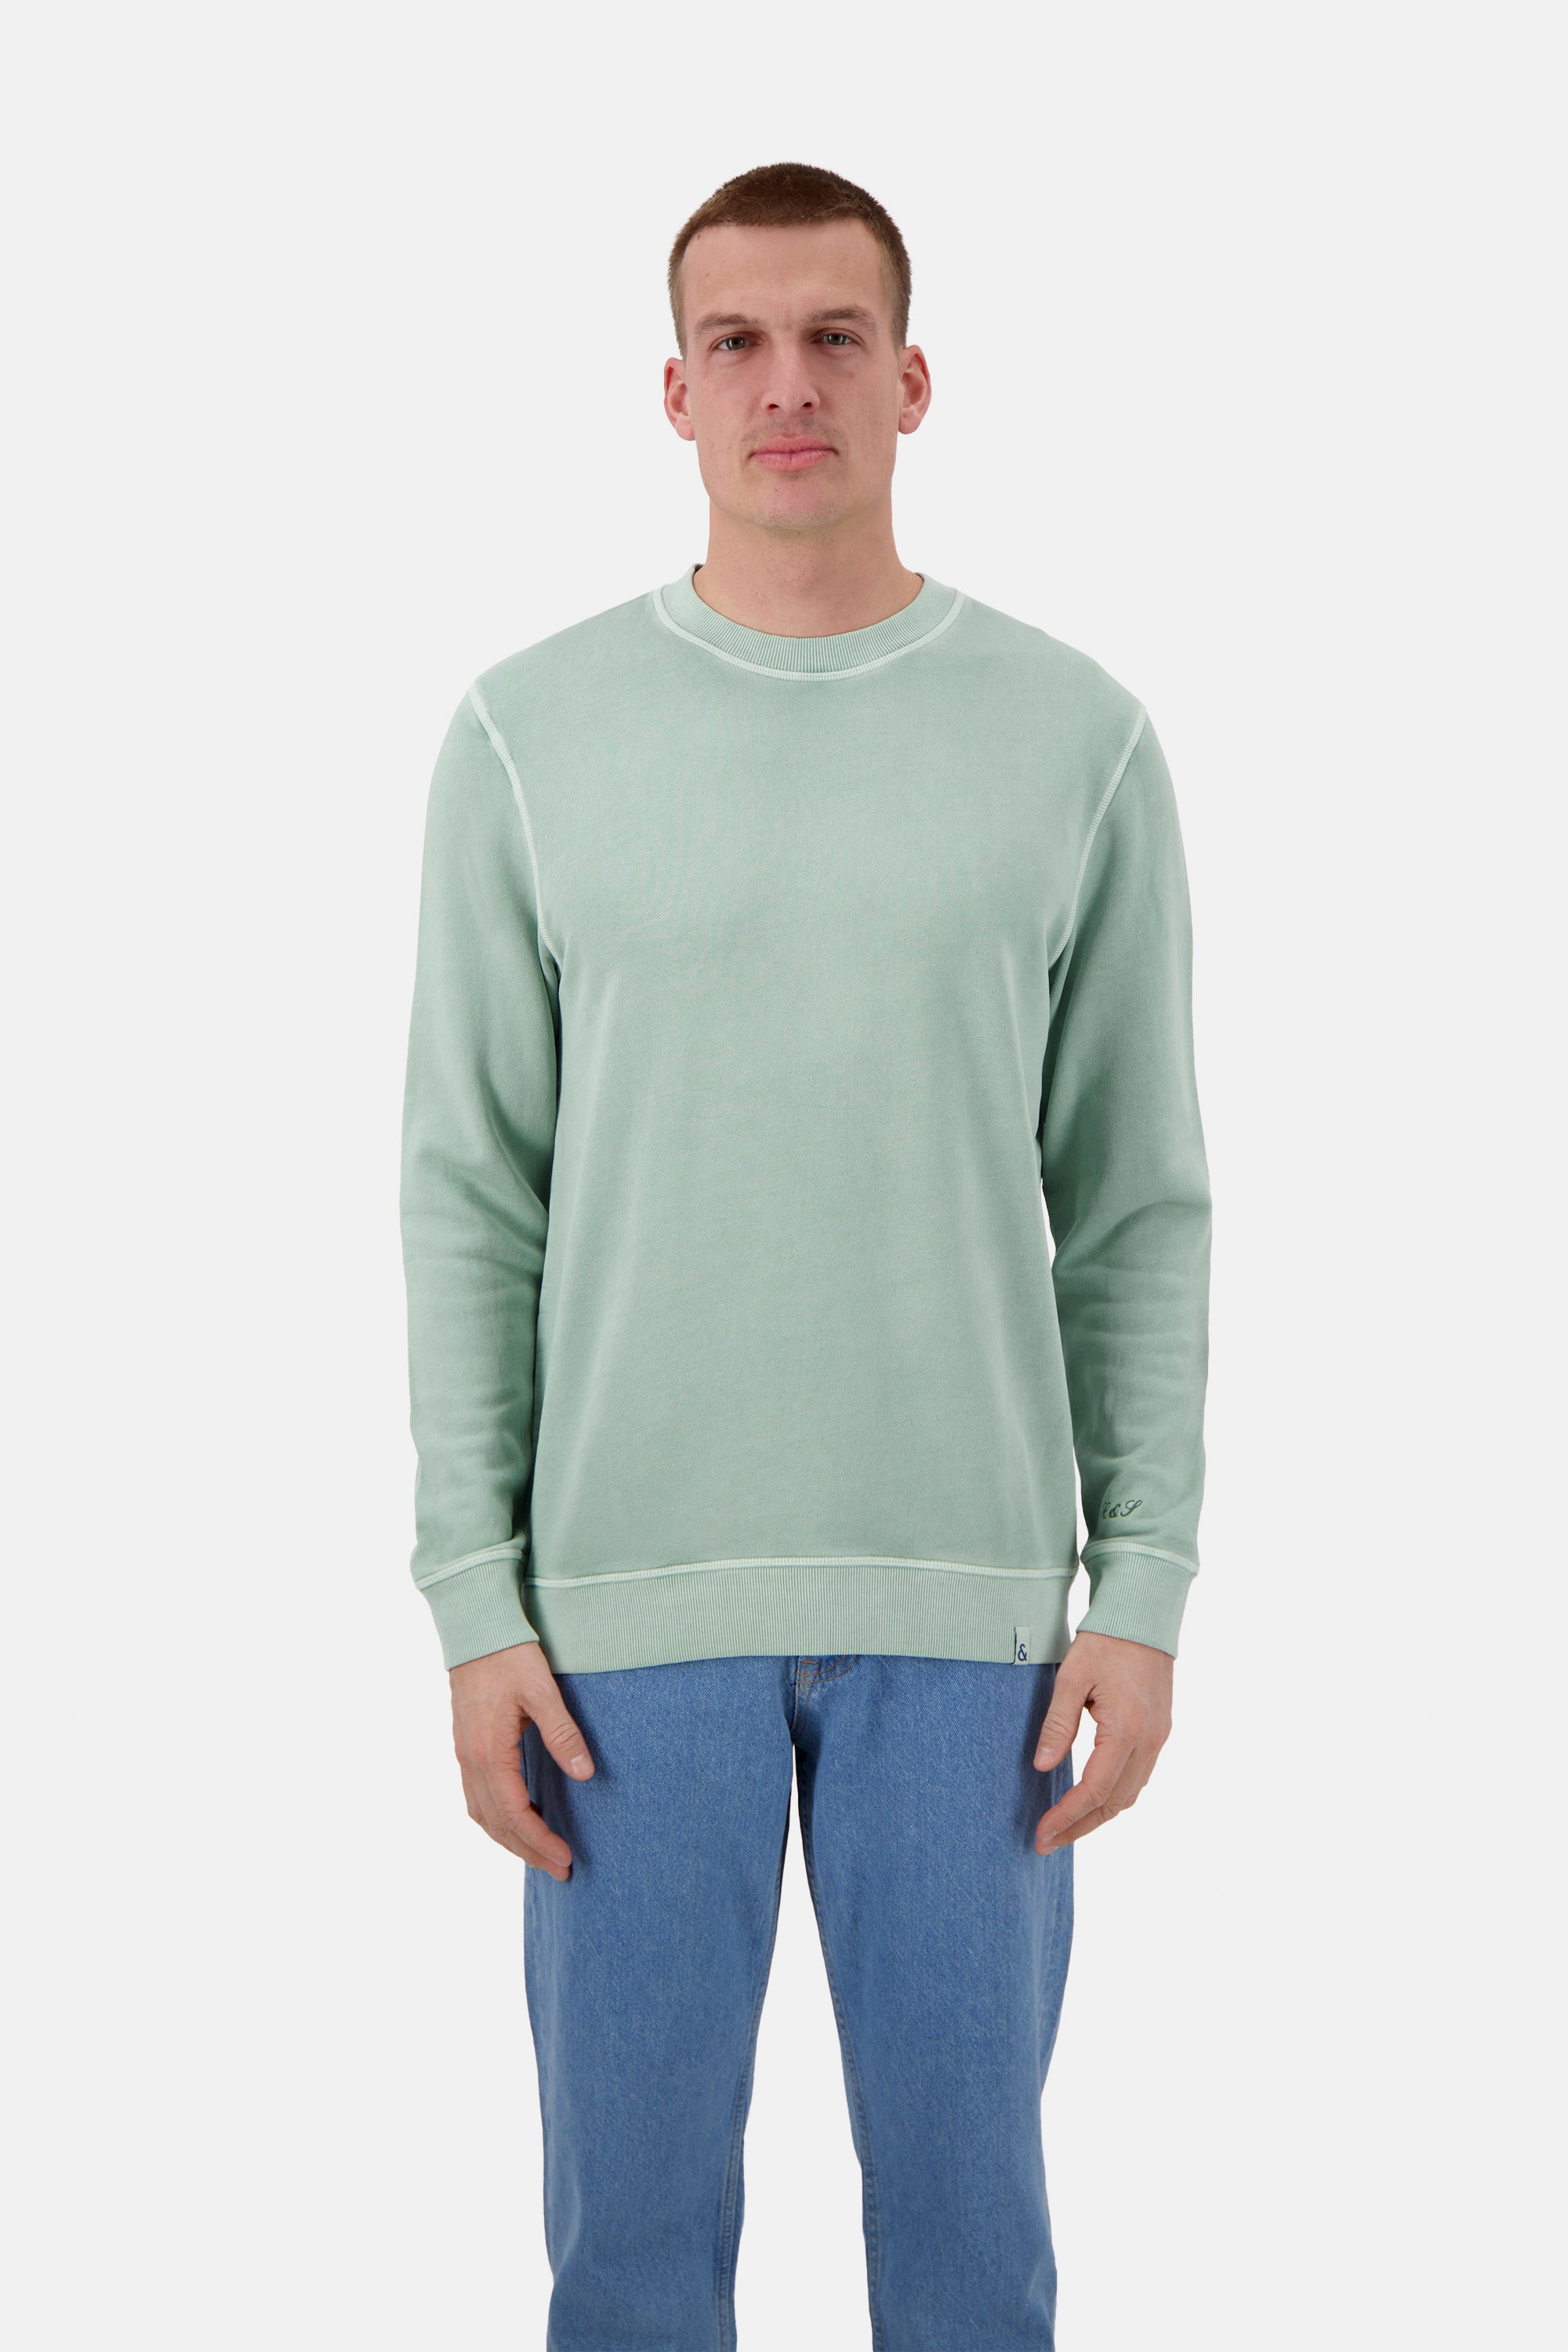 Herren Sweatshirt, hellgrün, 100% Baumwolle von Colours & Sons